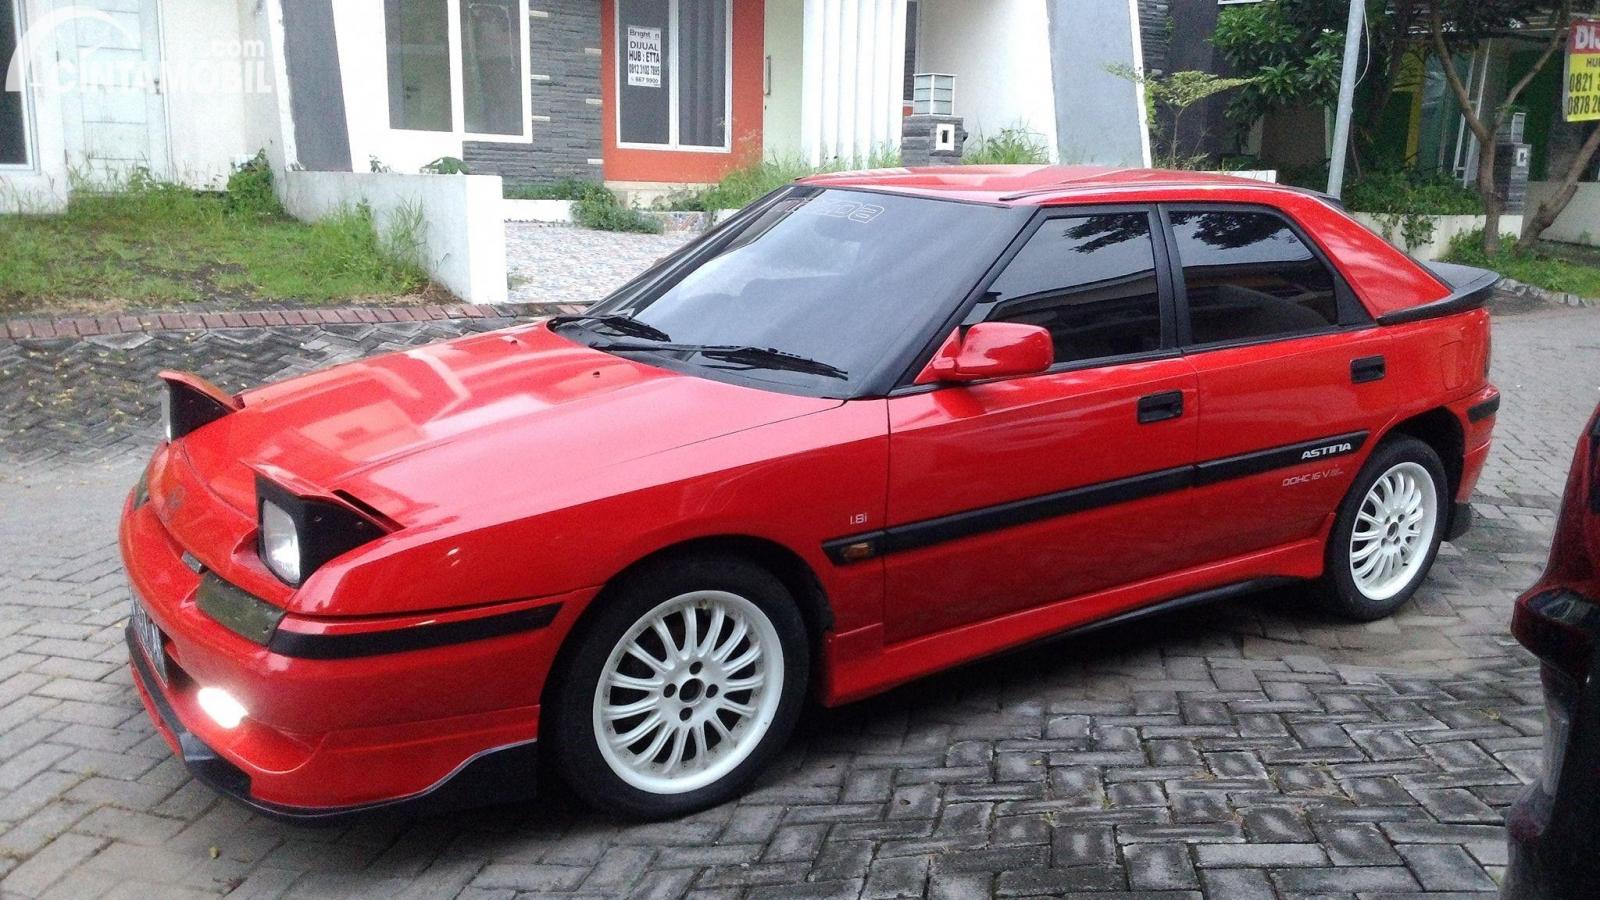 Gambar sebuah mobil Mazda Astina berwarna merah dilihat dari sisi depan